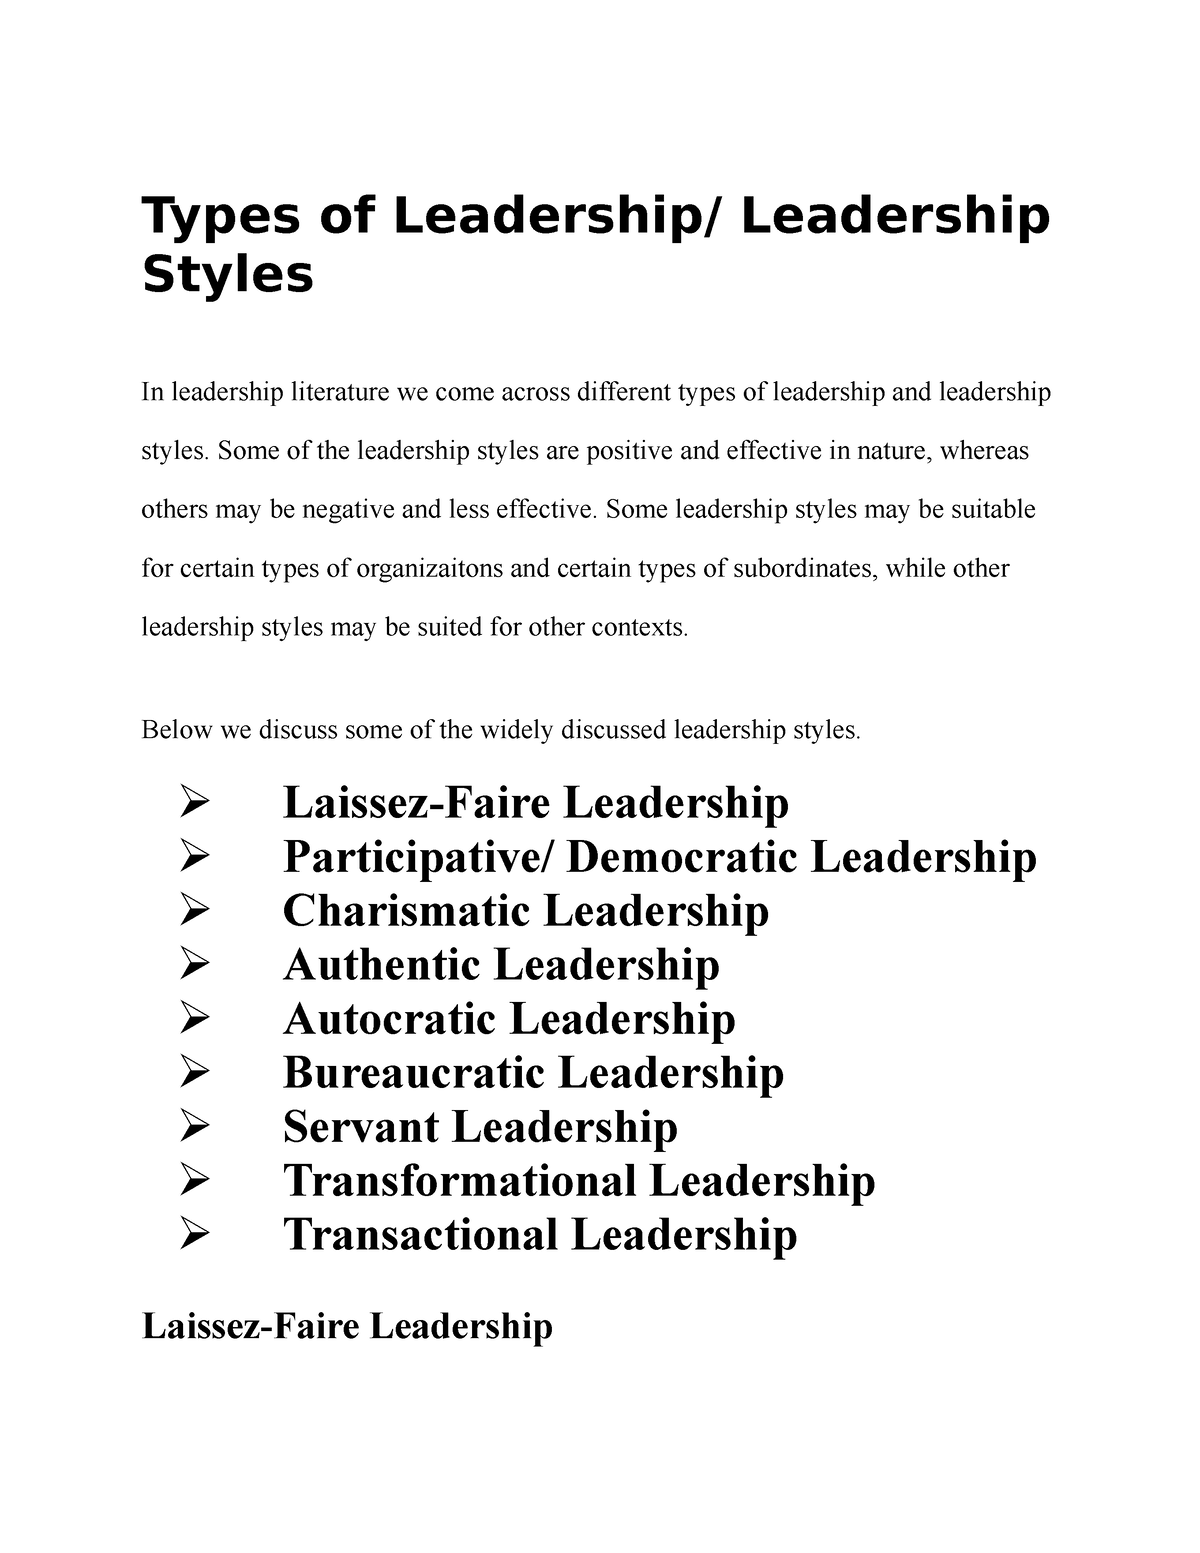 essay on types of leadership